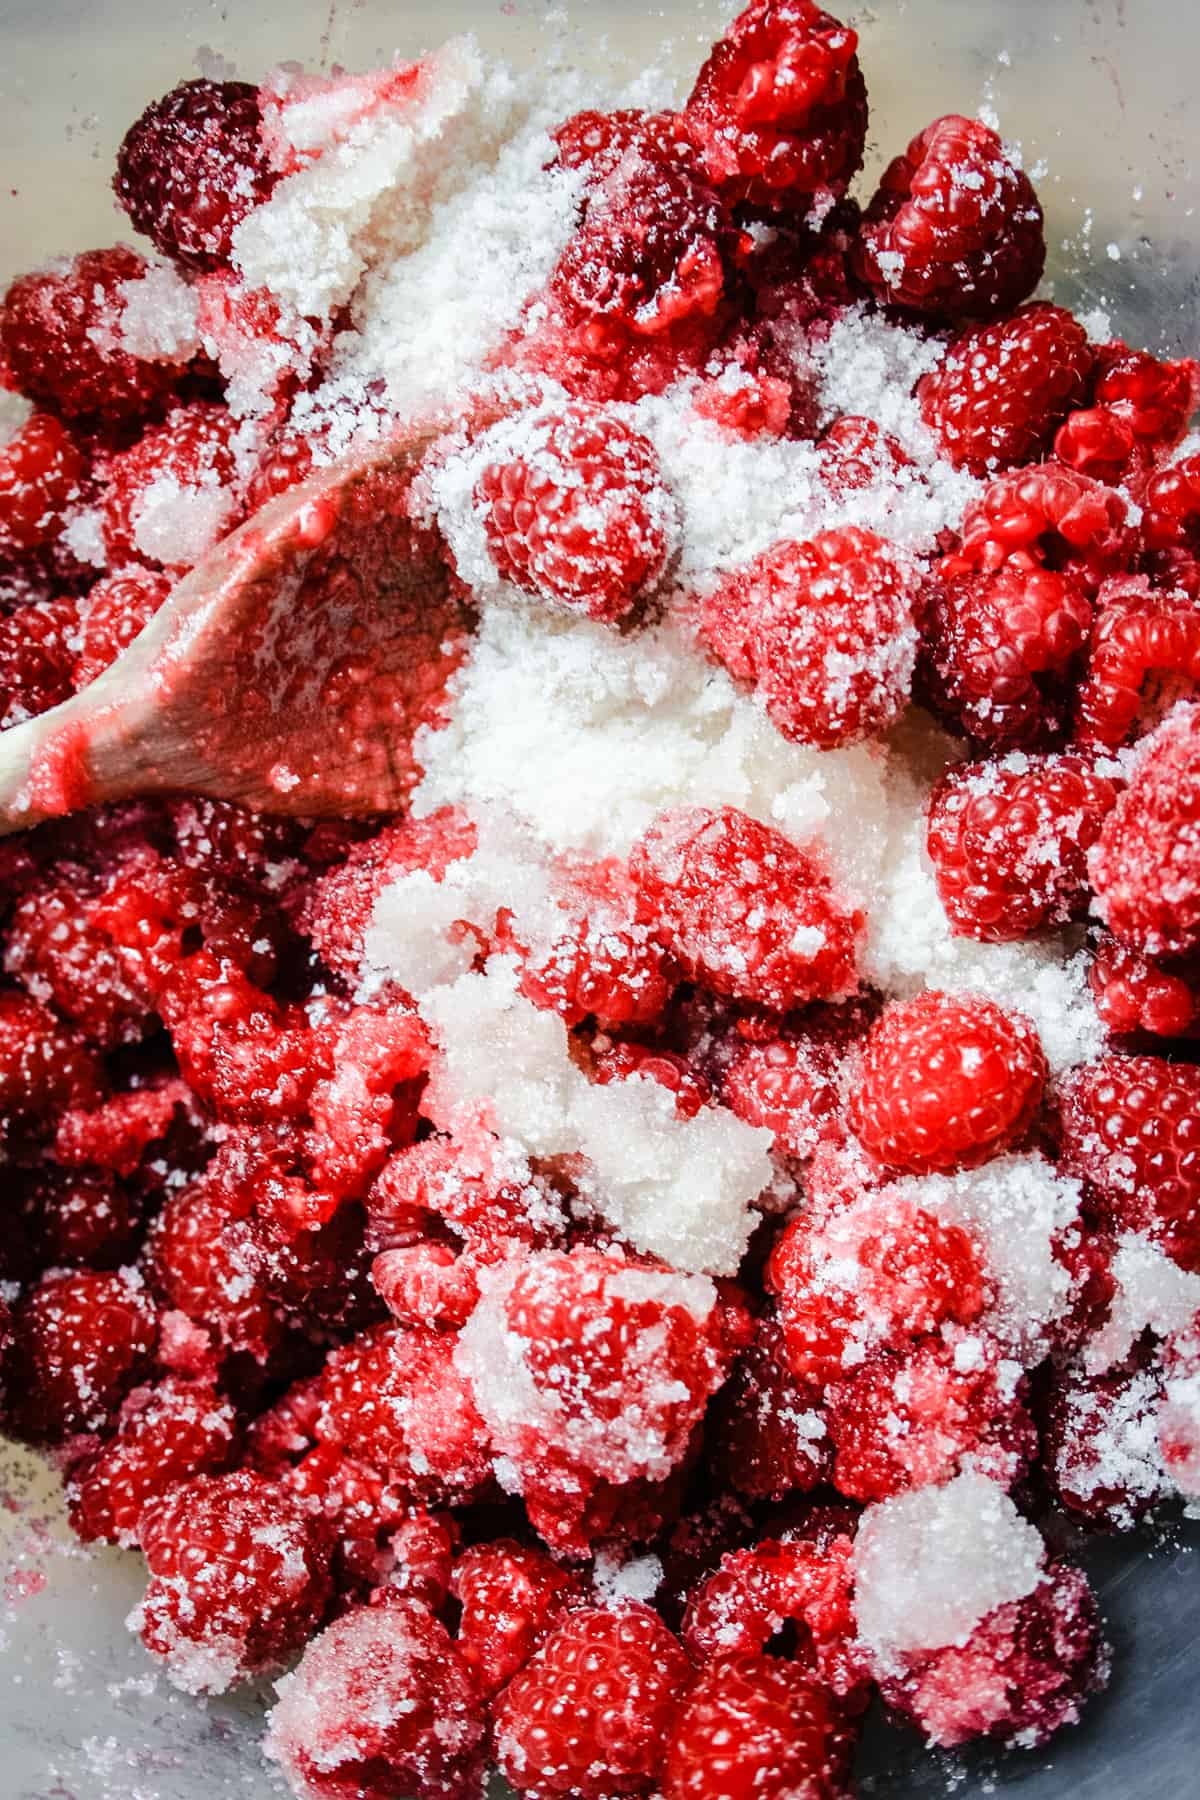 Raspberries and sugar macerating